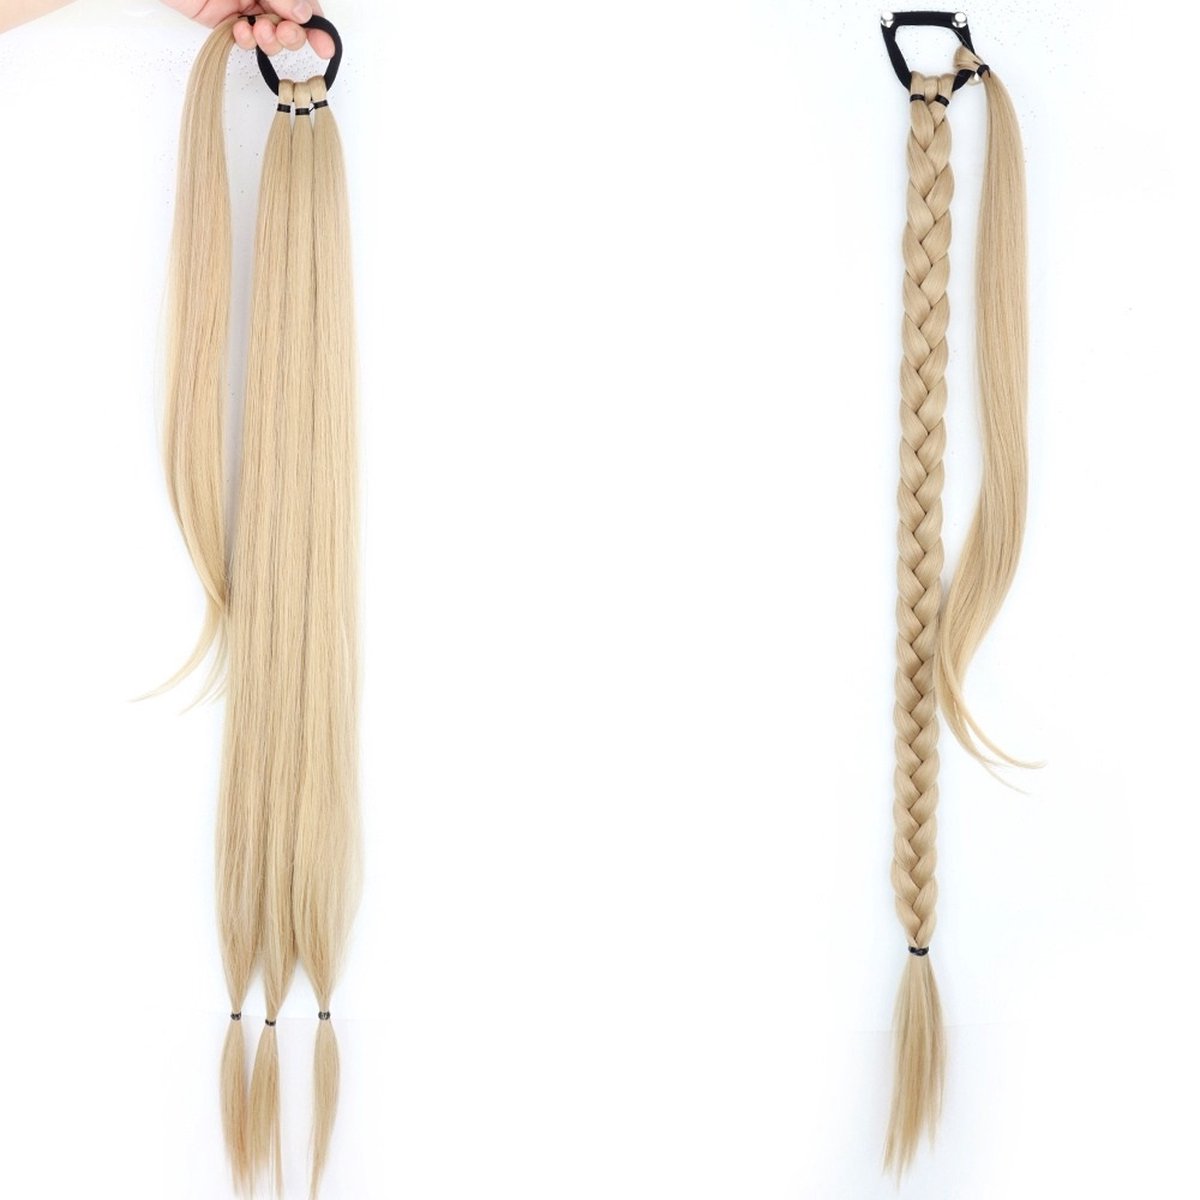 WiseGoods Luxe Paardenstaart Vlecht Extensions Dames - Hairextensions - Haarstuk - Vlechthaar - Pruik - Ponytail - Blond 86cm